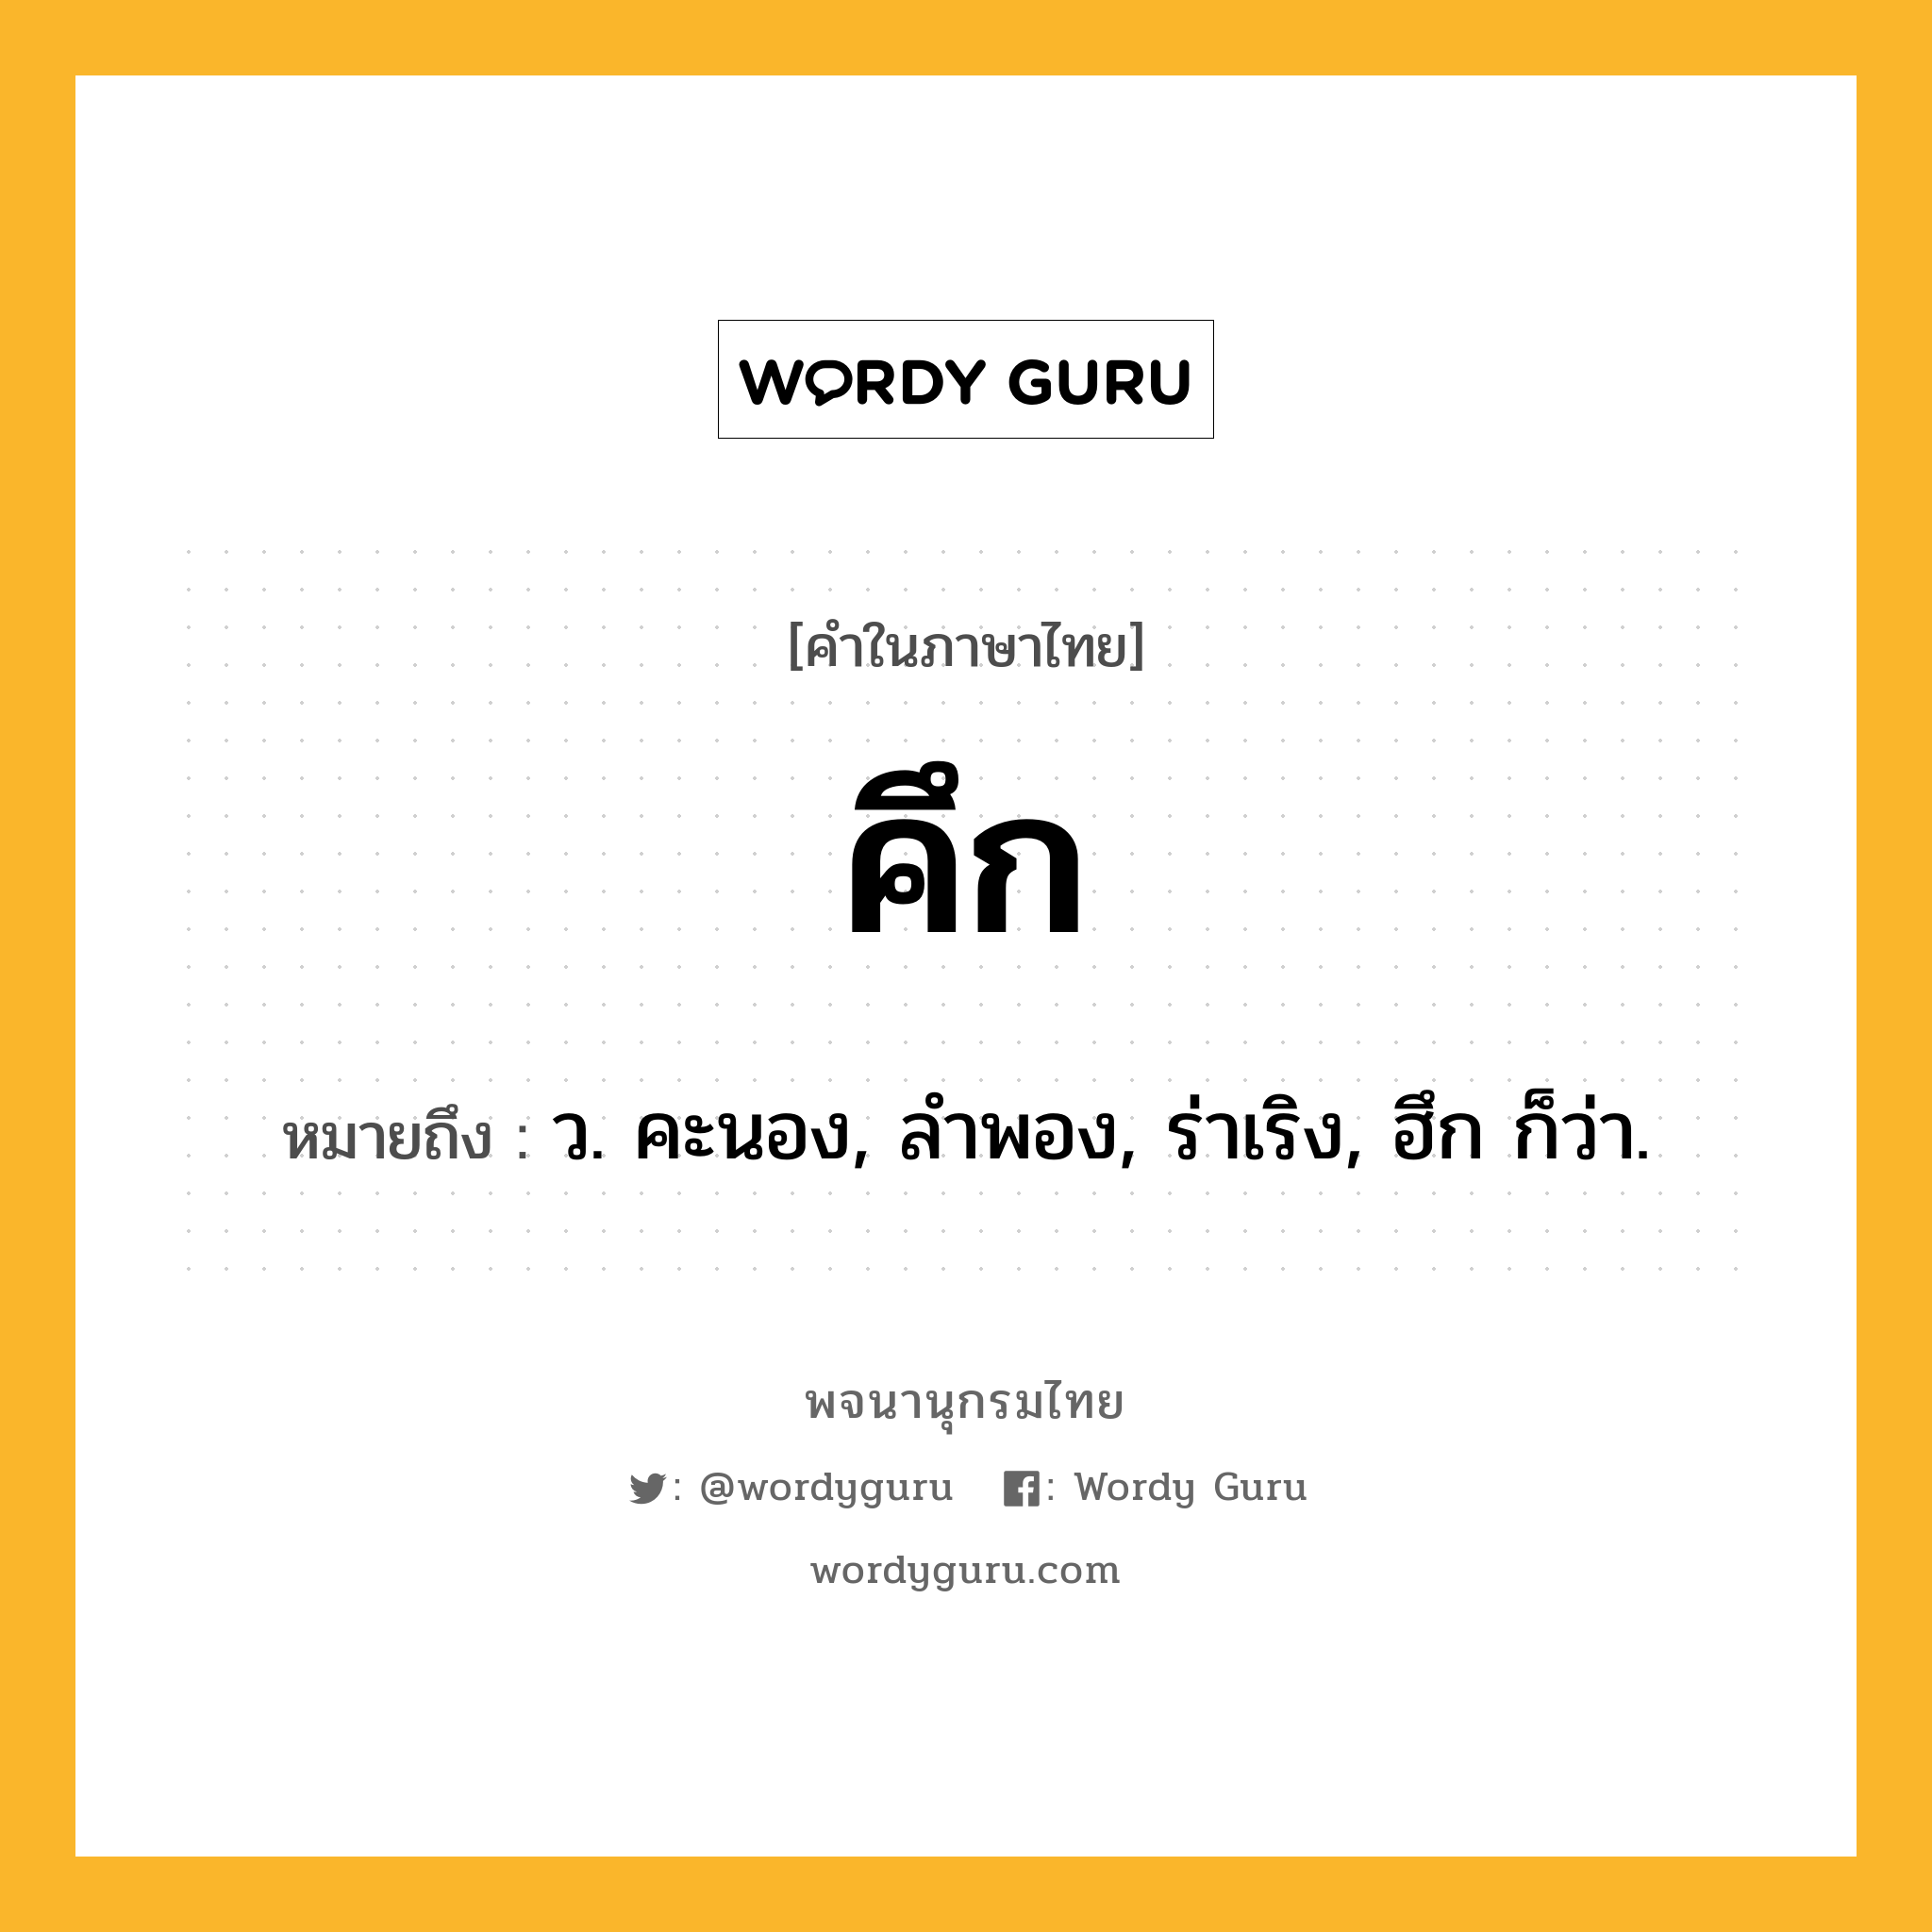 คึก ความหมาย หมายถึงอะไร?, คำในภาษาไทย คึก หมายถึง ว. คะนอง, ลําพอง, ร่าเริง, ฮึก ก็ว่า.